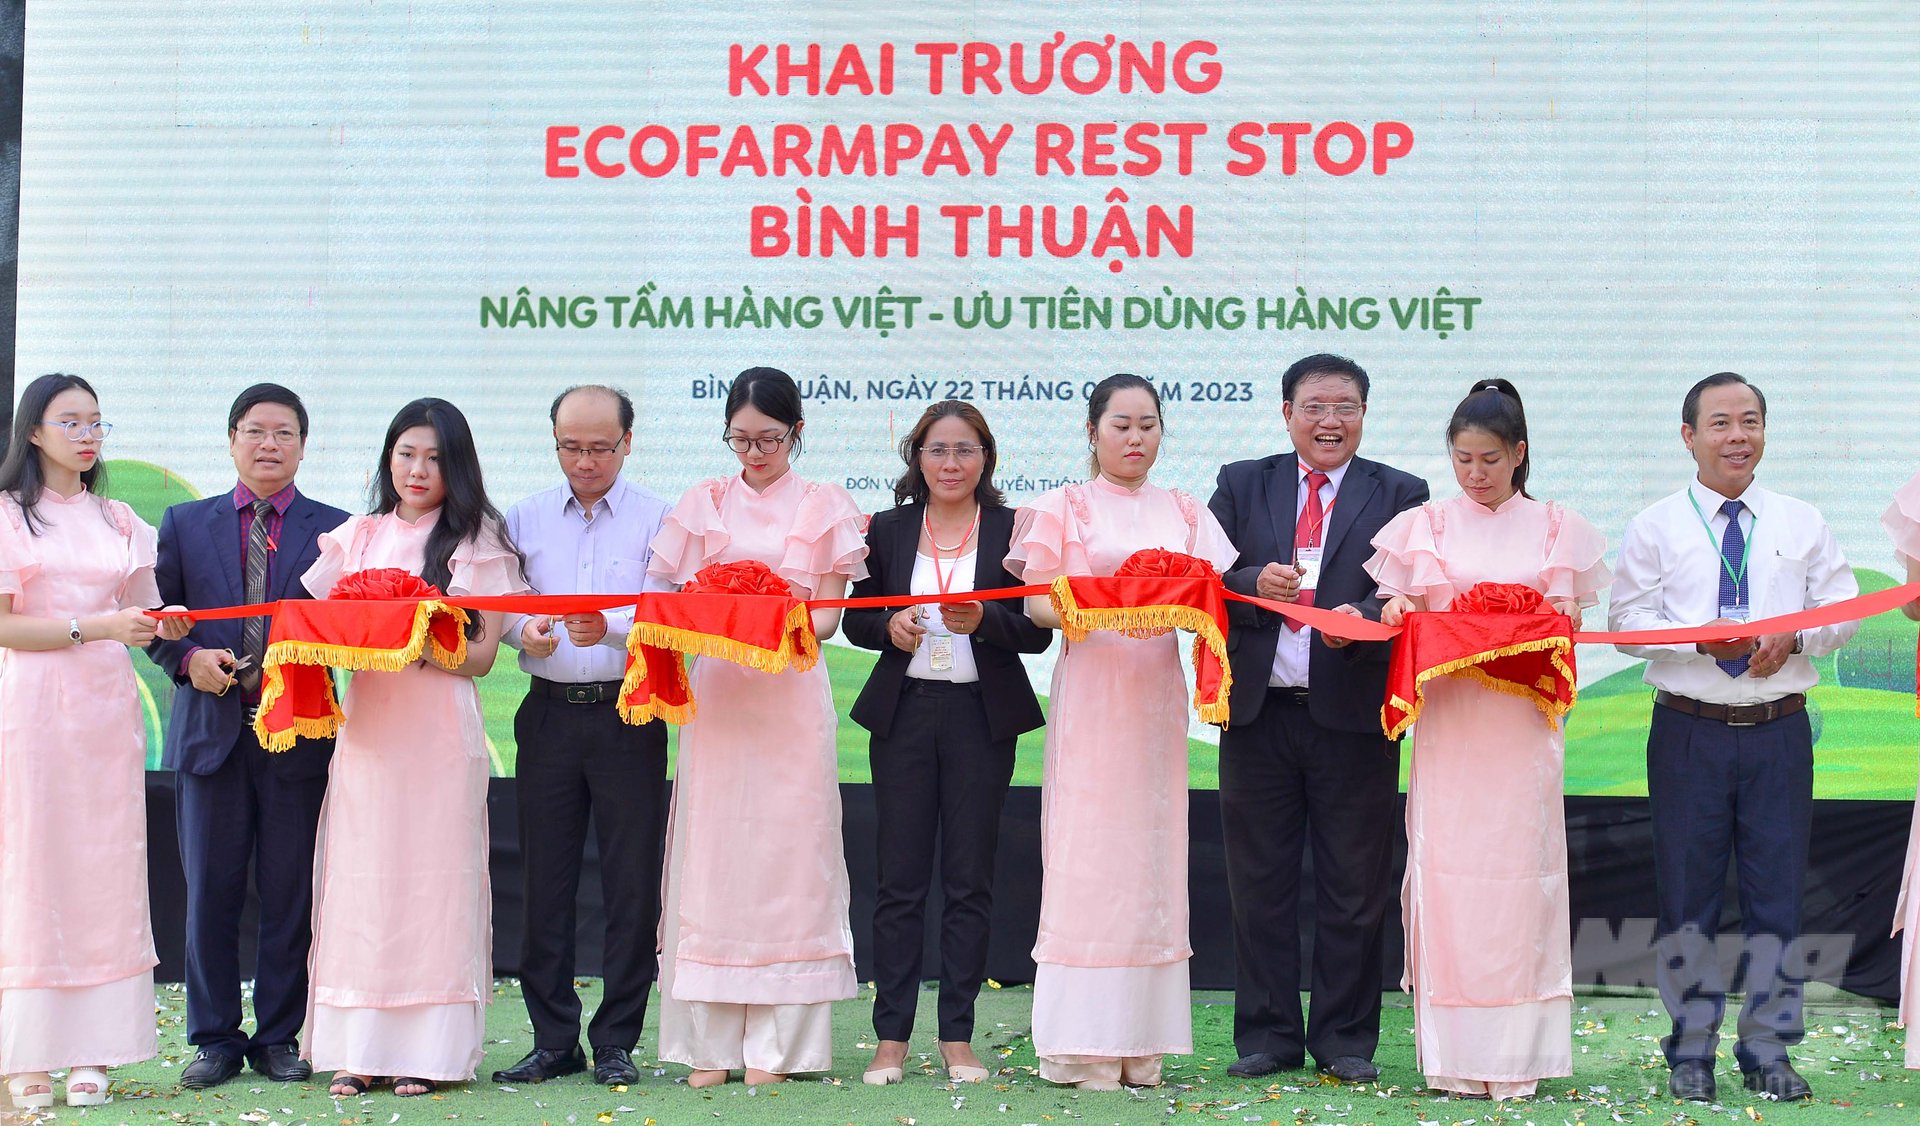 Hội chợ triển lãm thương mại Bình Thuận 2023 và Khai trương Ecofarm Pay Rest Stop Bình Thuận được tổ chức vào sáng 22/7 tại Bình Thuận. Ảnh: Minh Hậu.